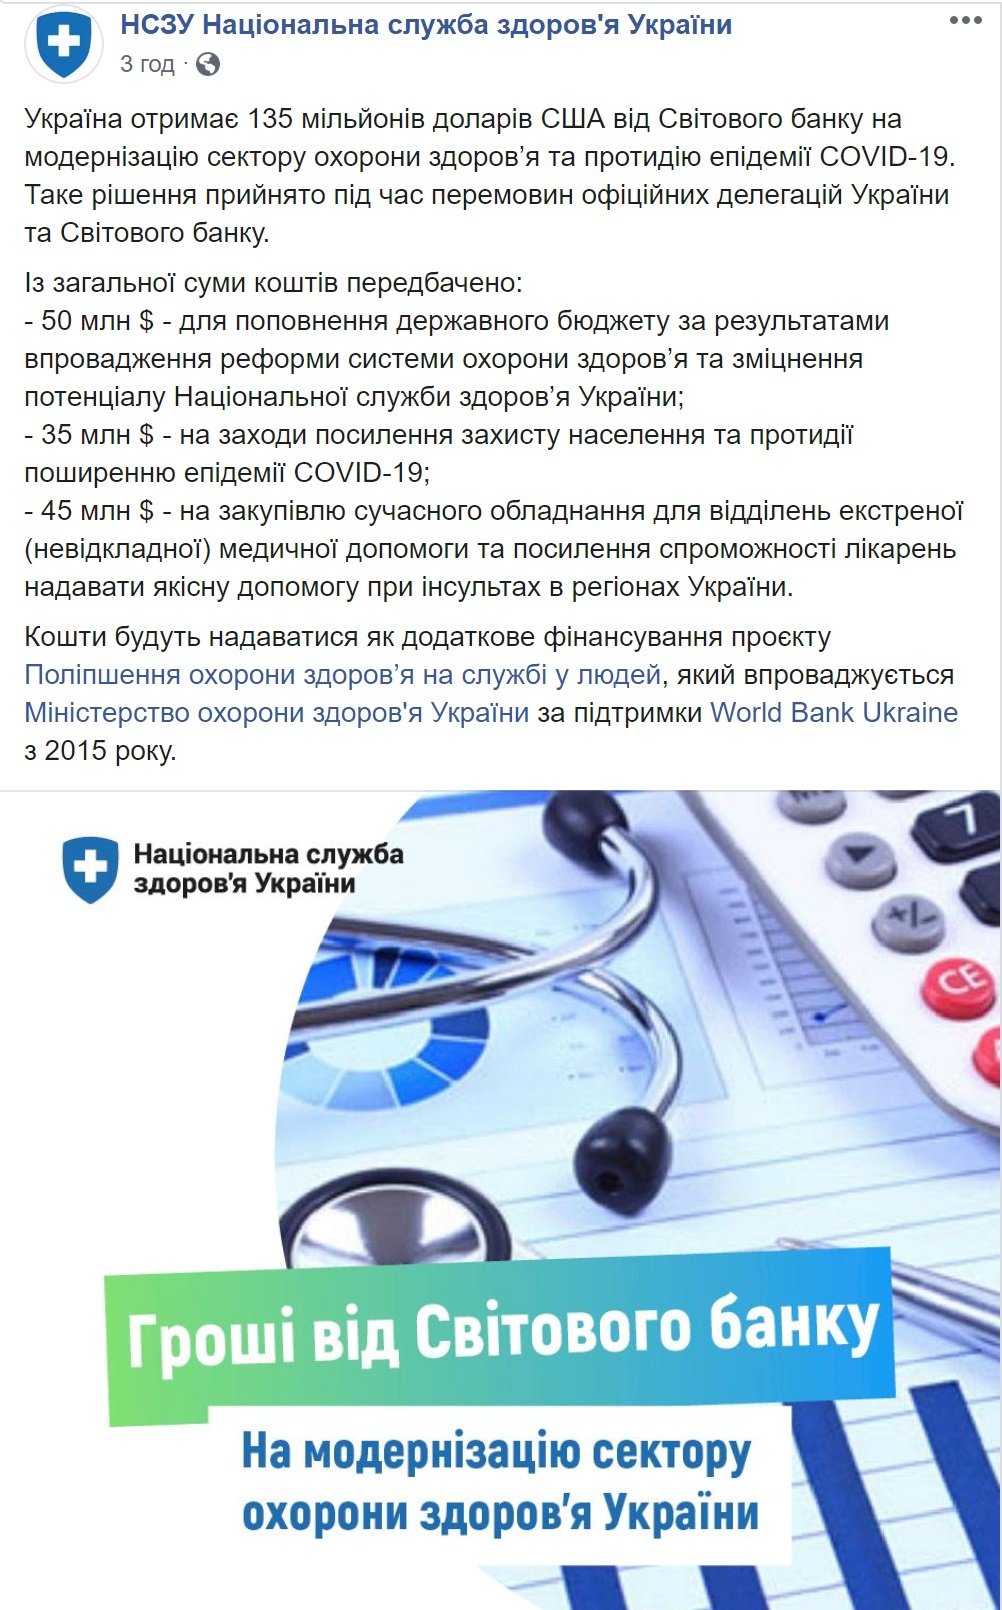 Всемирный банк выделил Украине $135 млн на медицину и противодействие COVID-19